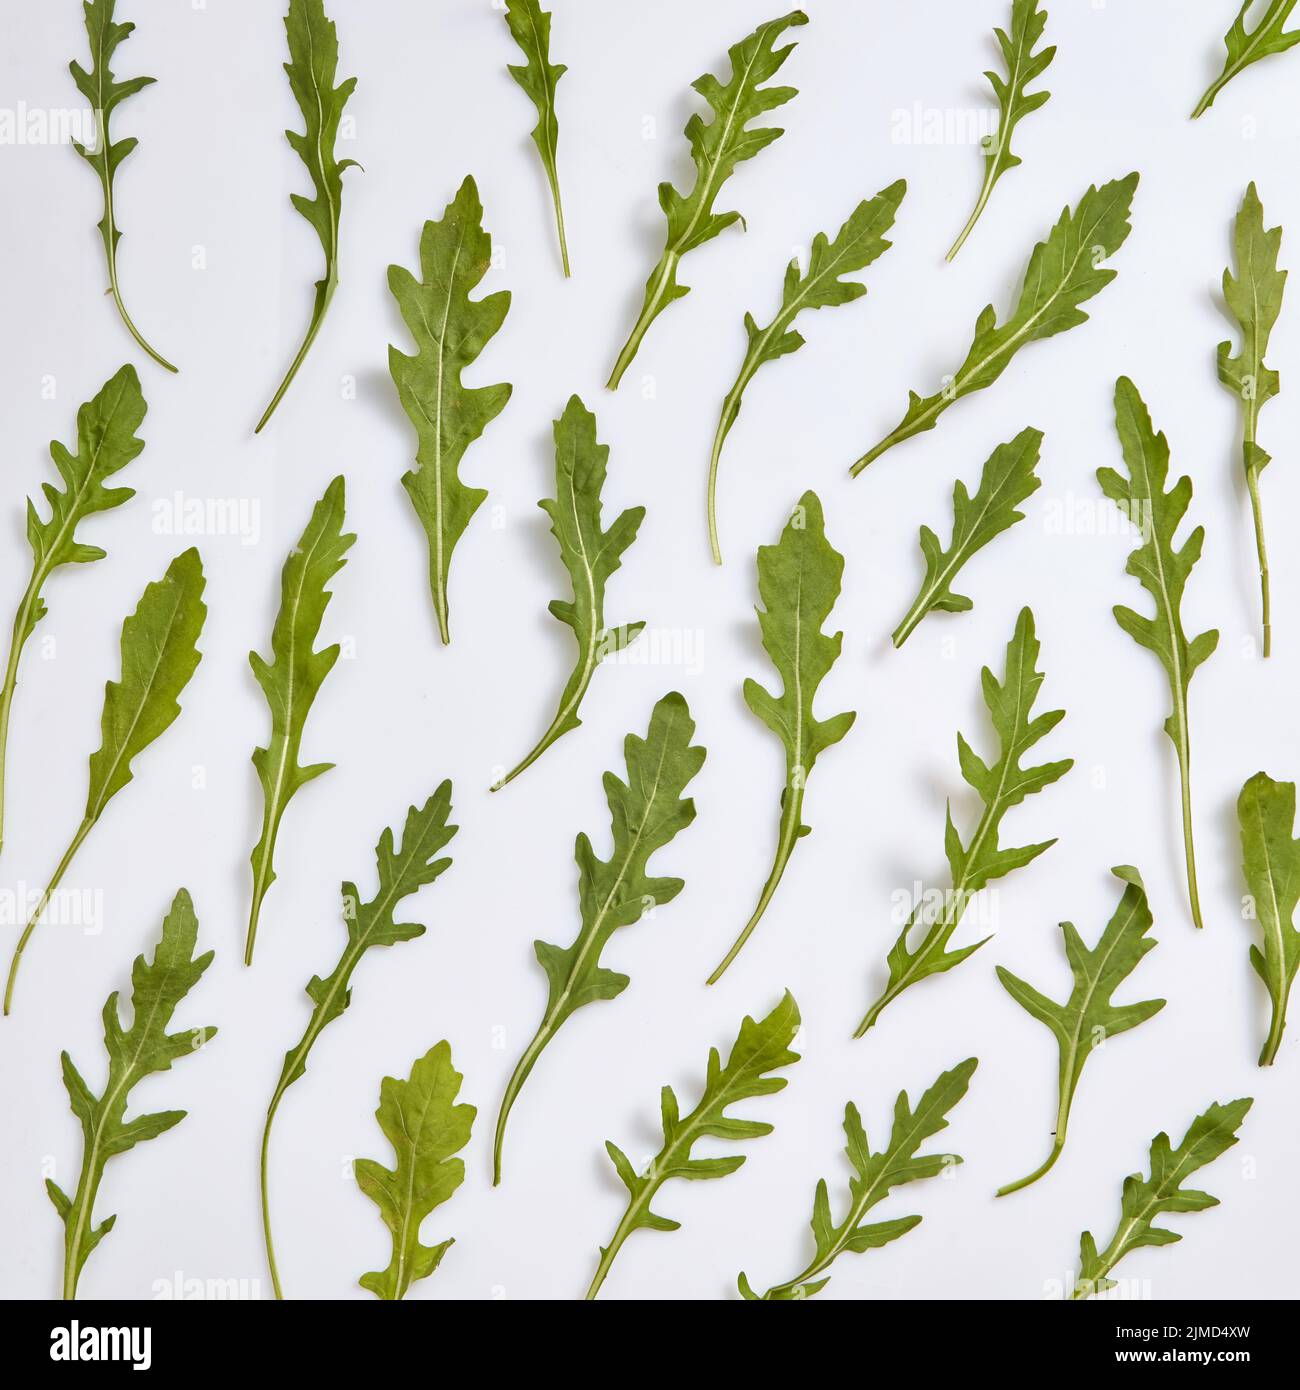 Motif végétal à partir de feuilles d'arugula naturelles fraîchement cueillies. Banque D'Images